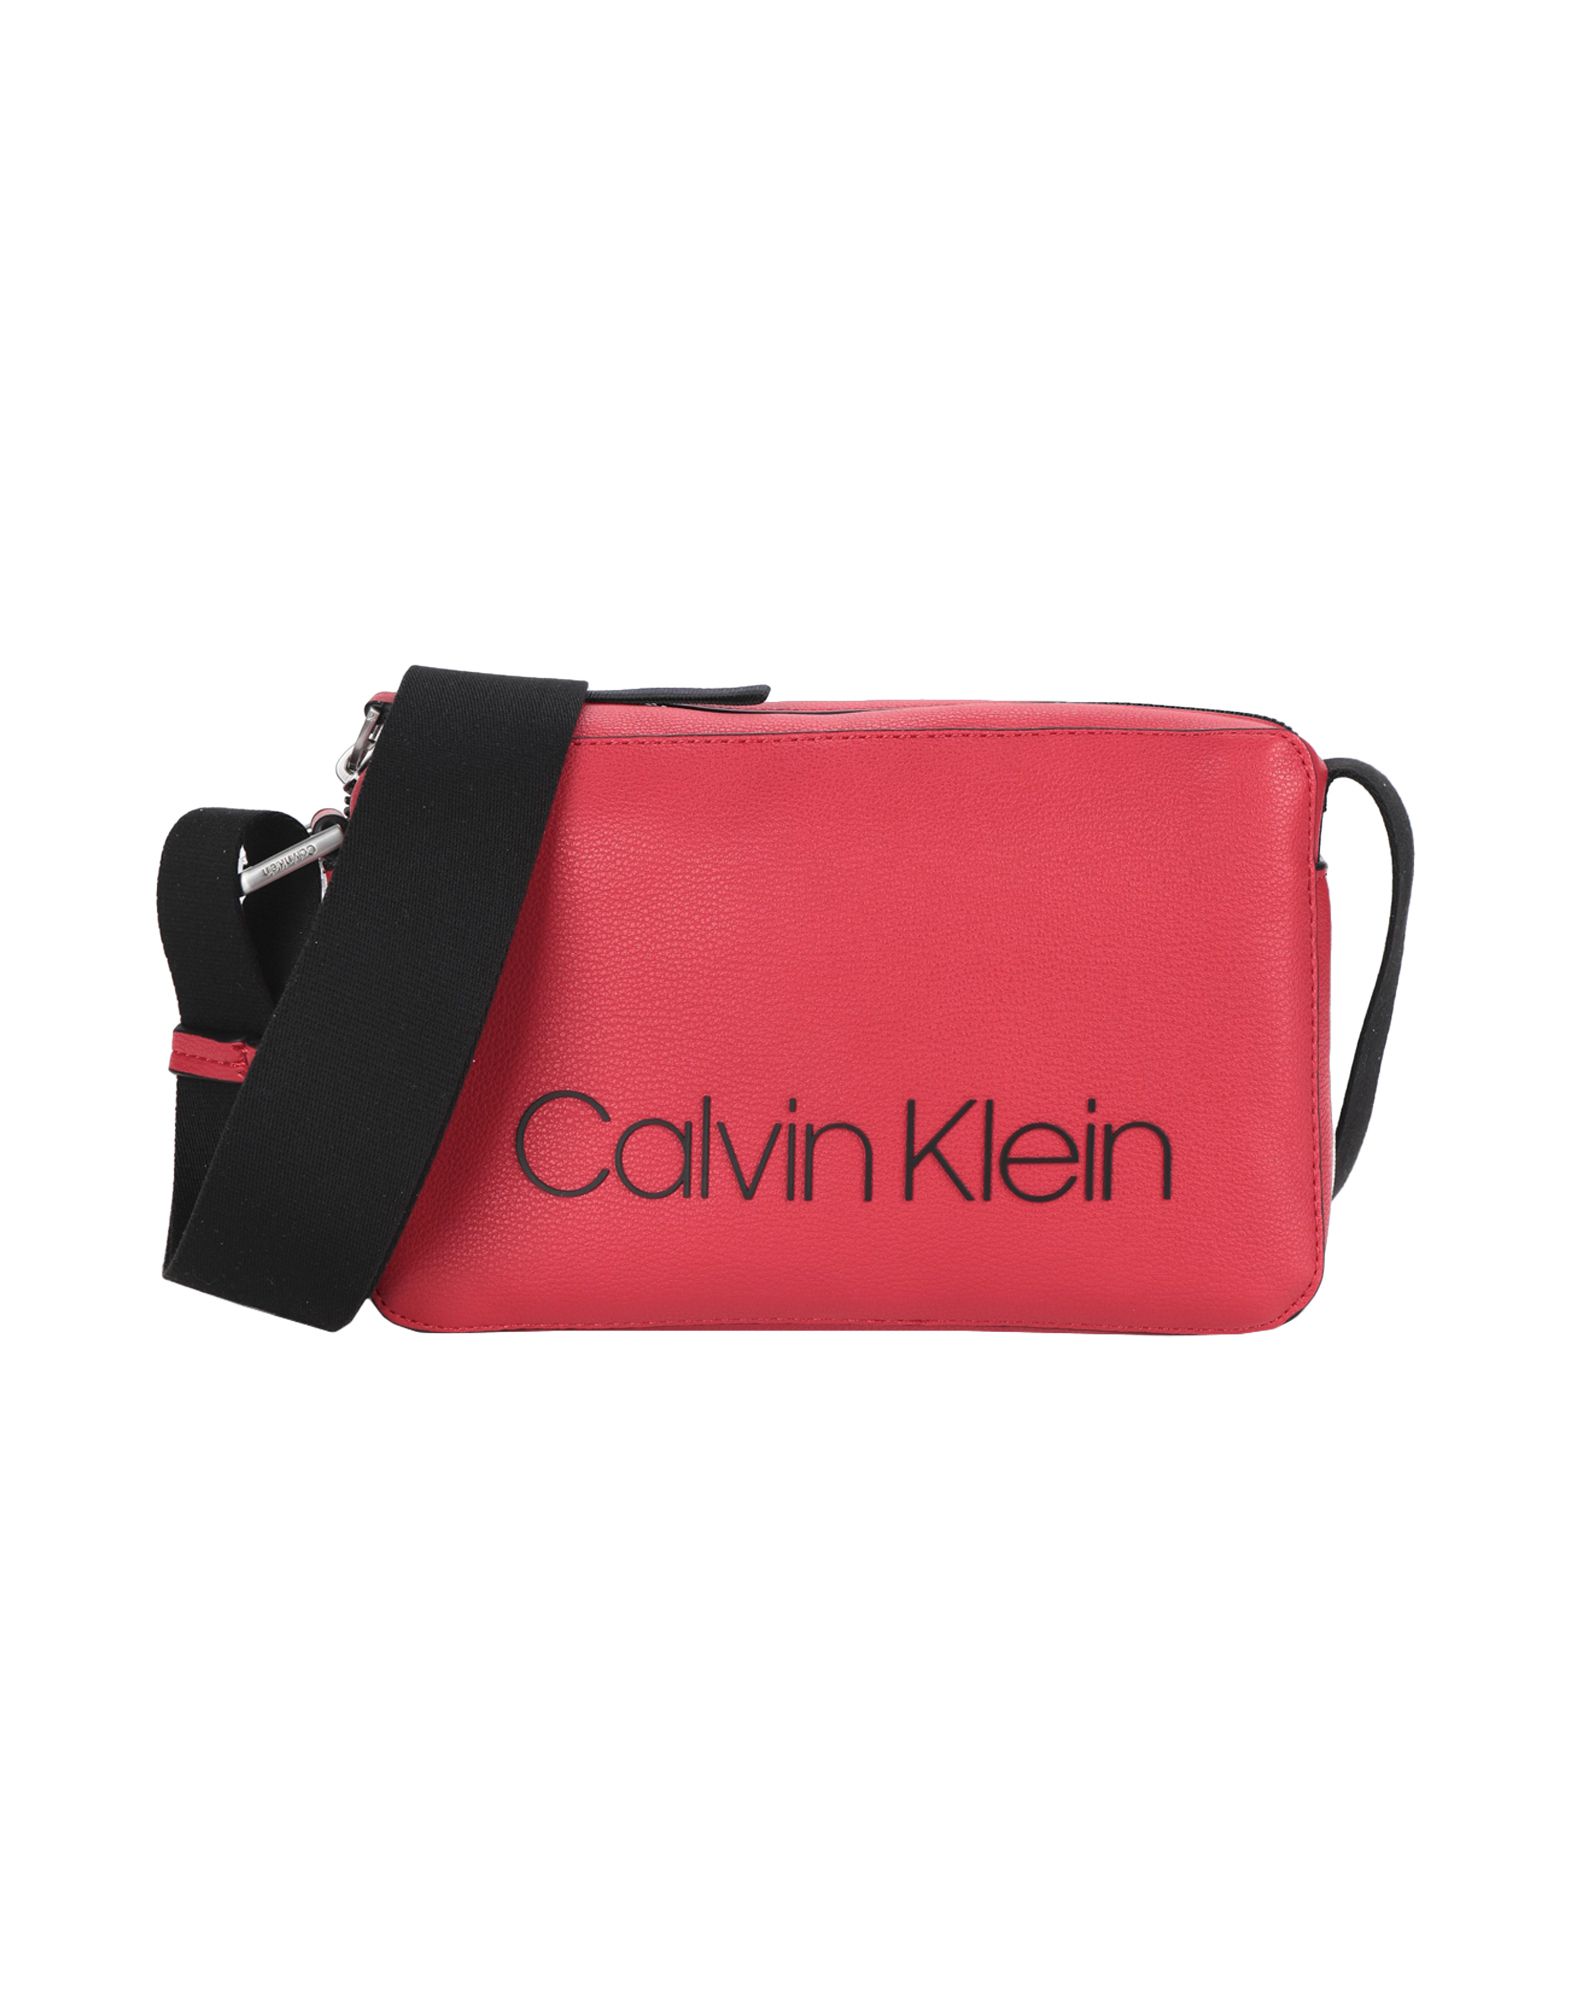 《送料無料》CALVIN KLEIN レディース 肩掛けバッグ レッド ポリウレタン 100% COLLEGIC SMALL CROSS